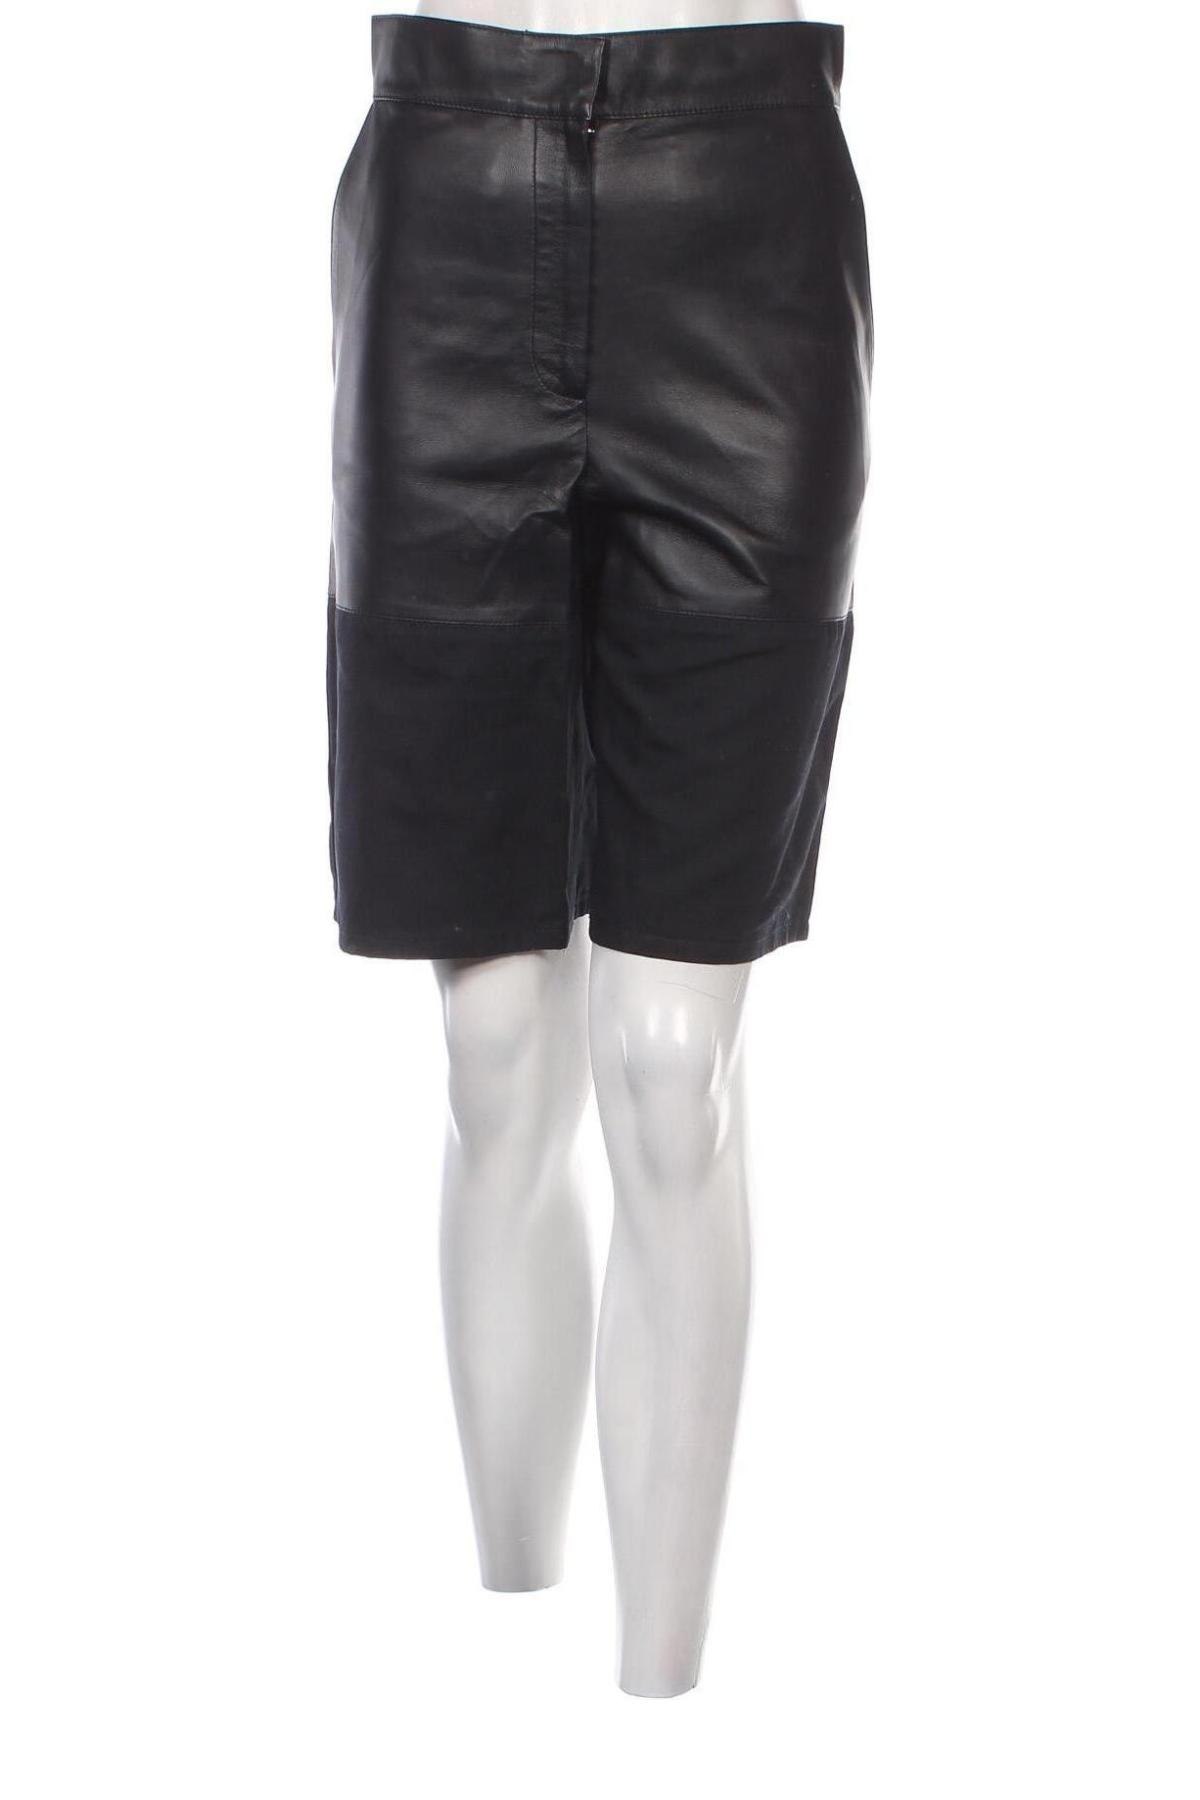 Pantaloni de piele pentru damă COS, Mărime XXS, Culoare Negru, Preț 211,68 Lei